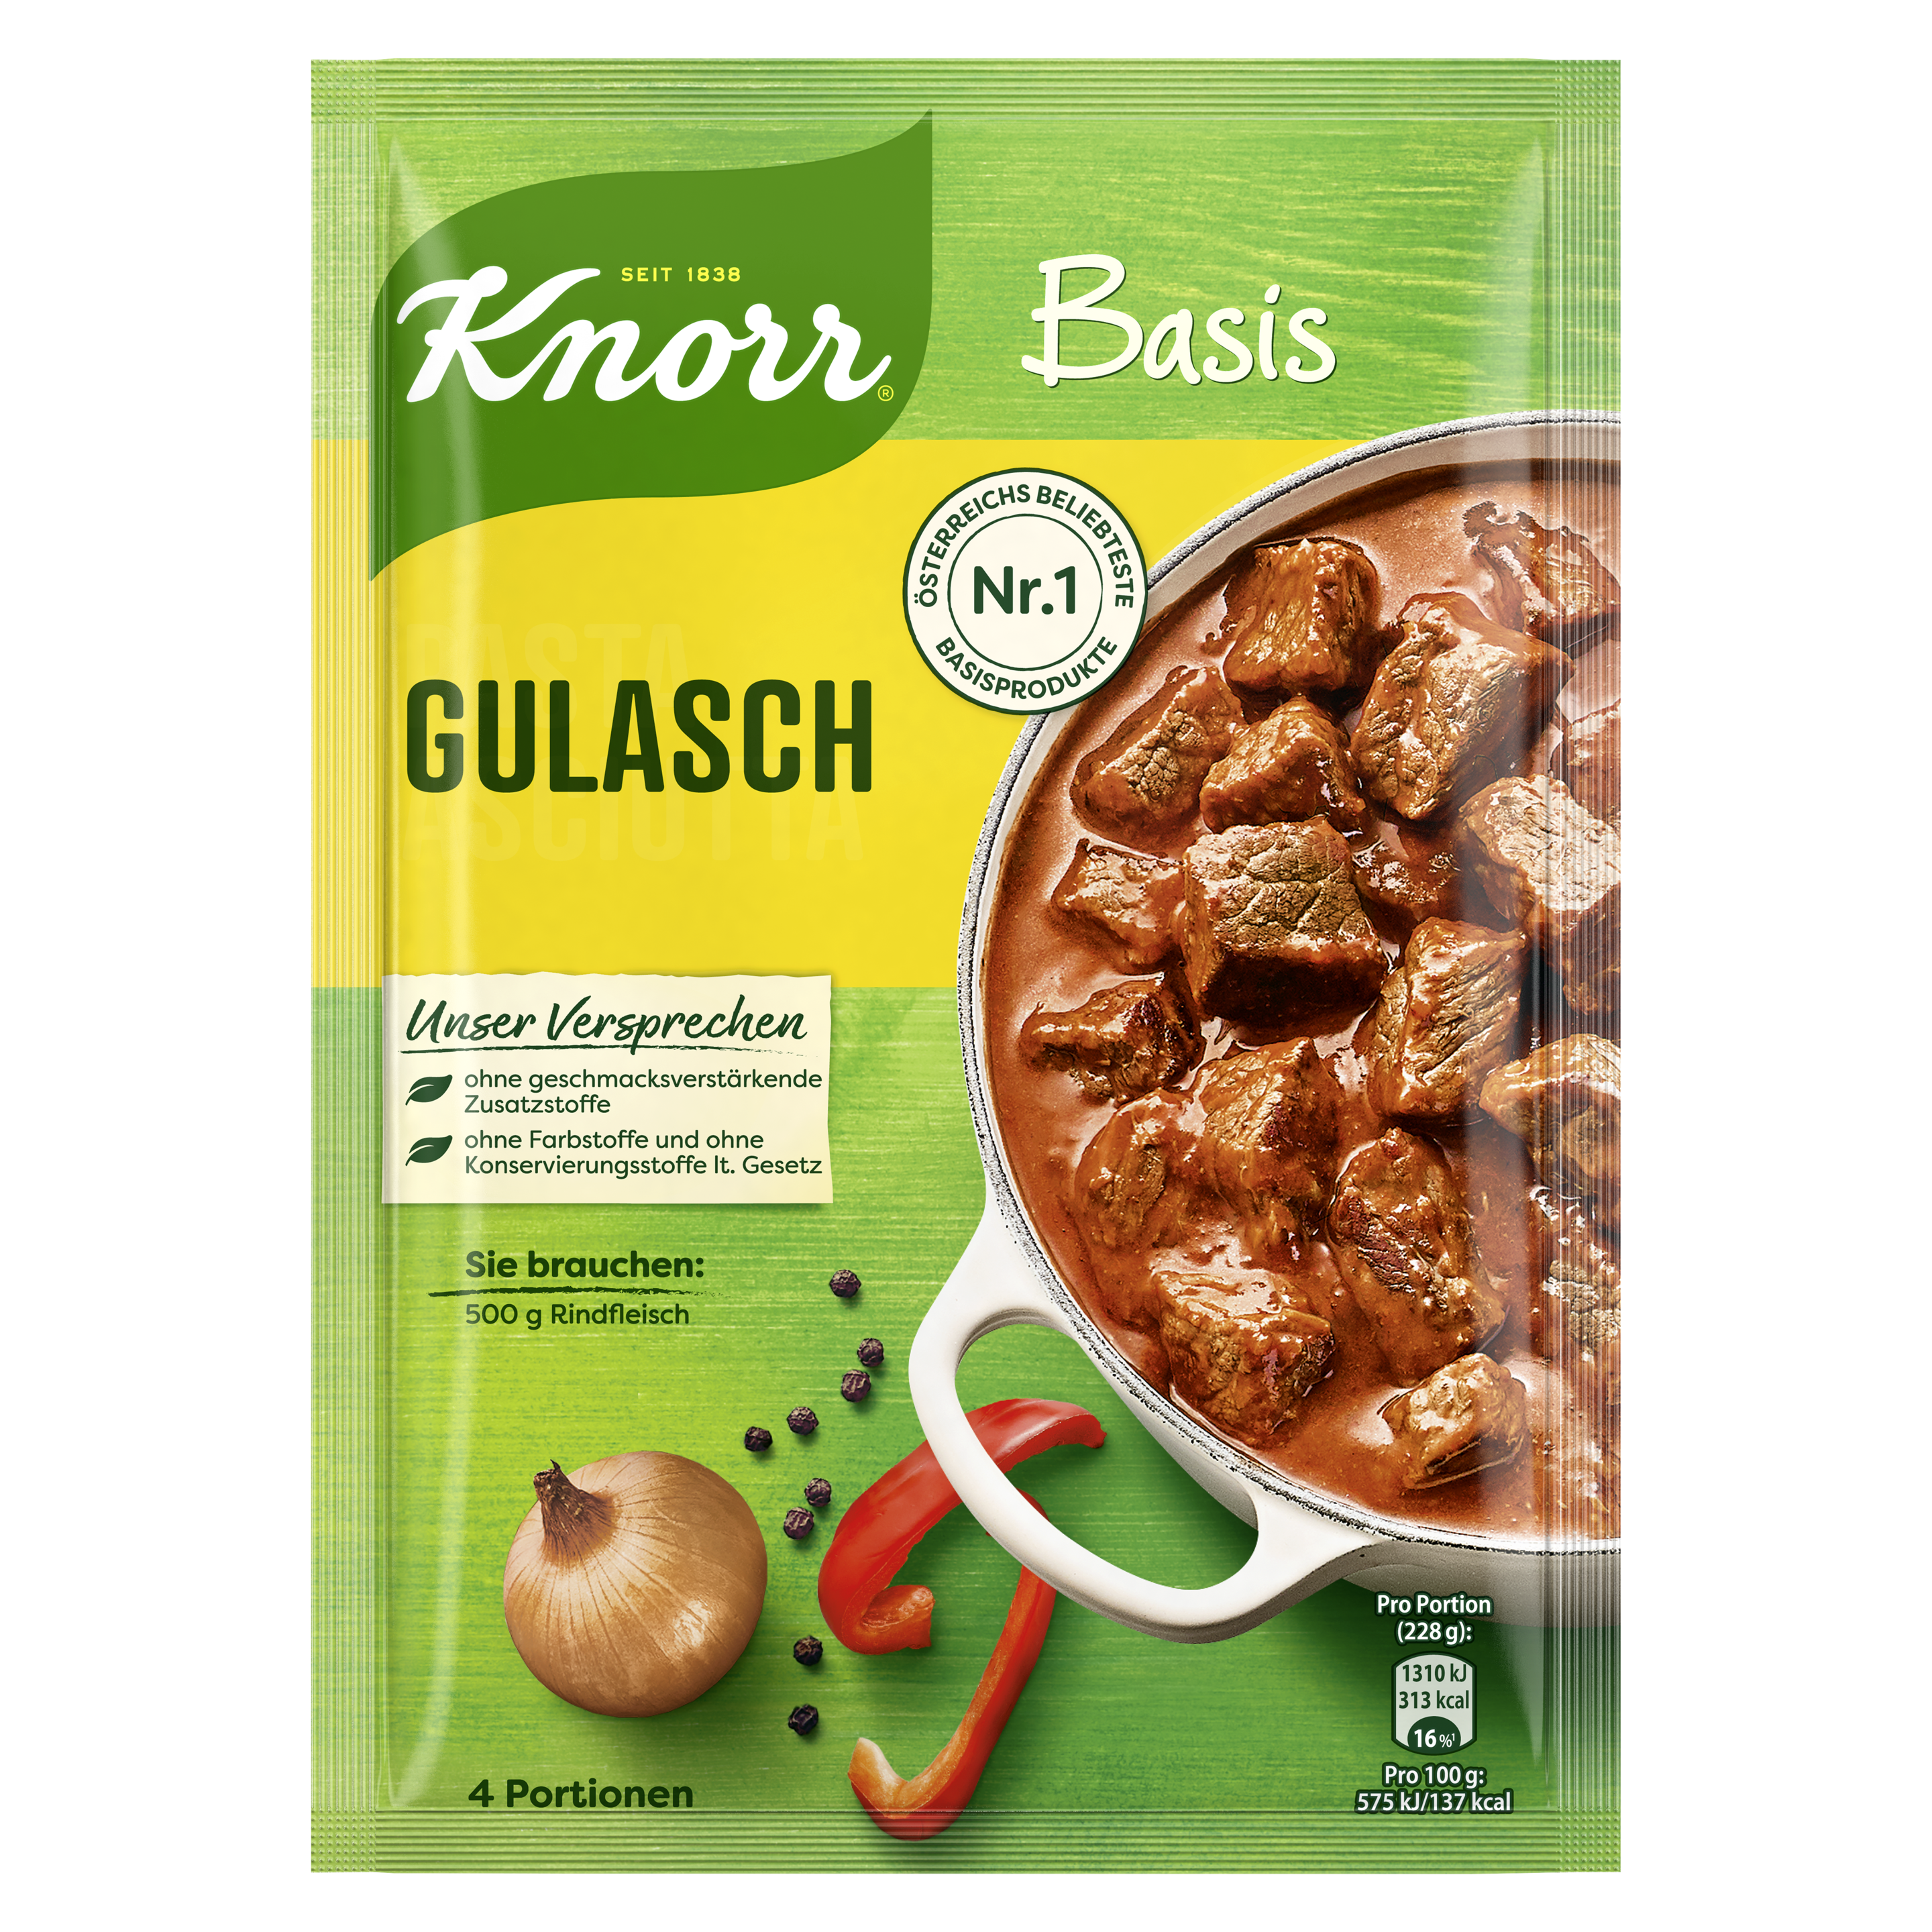 Knorr Basis Gulasch 4 Portionen